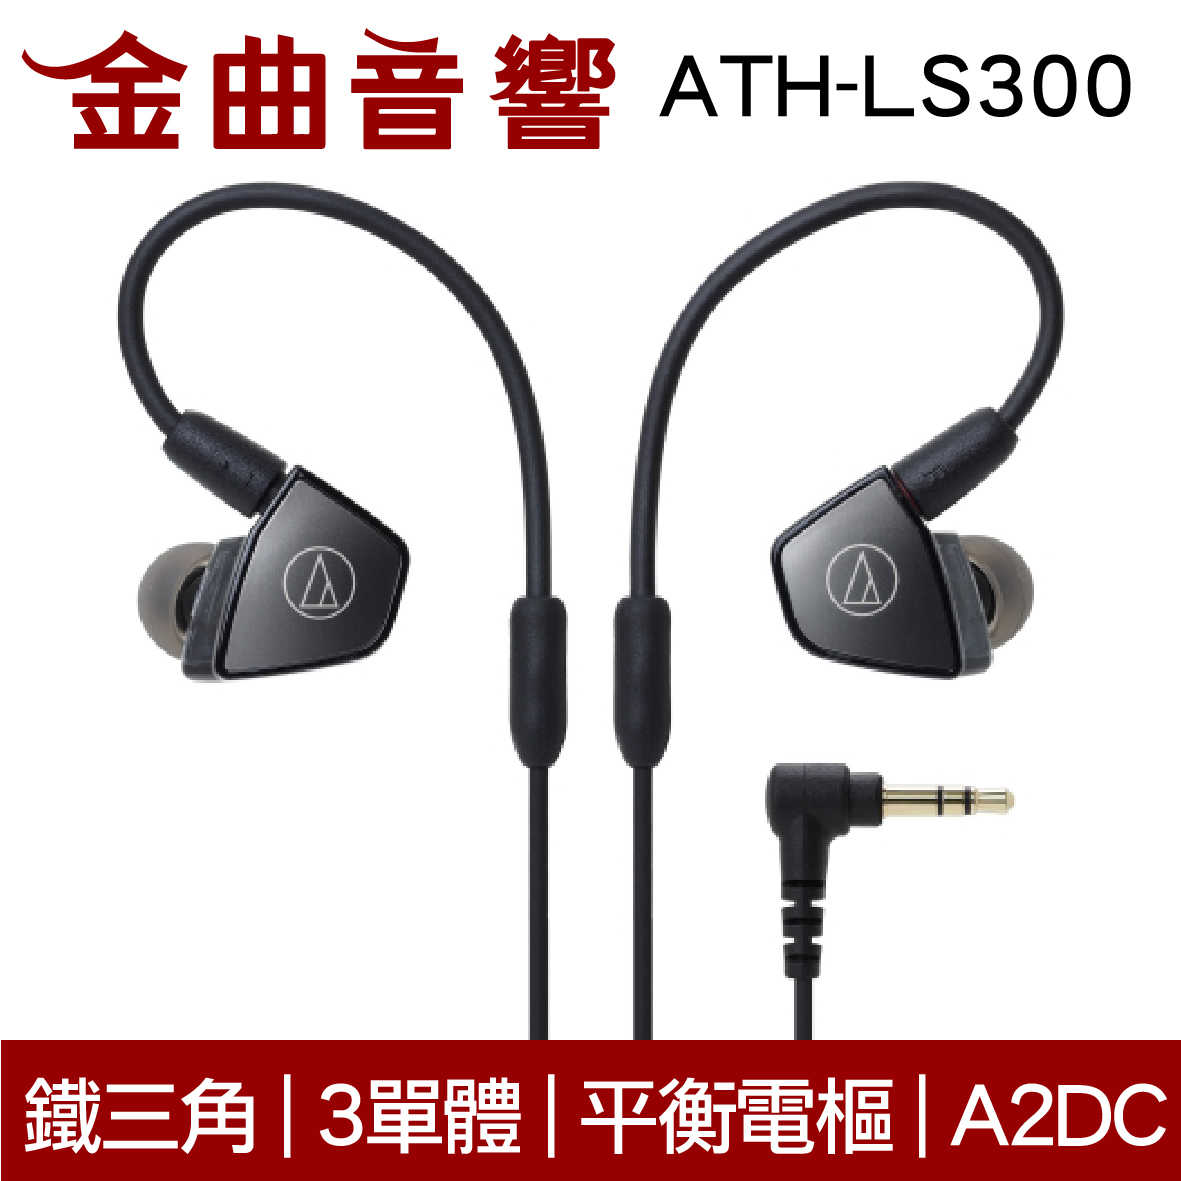 鐵三角 ATH-LS300 3單體 平衡電樞 耳道式耳機 | 金曲音響